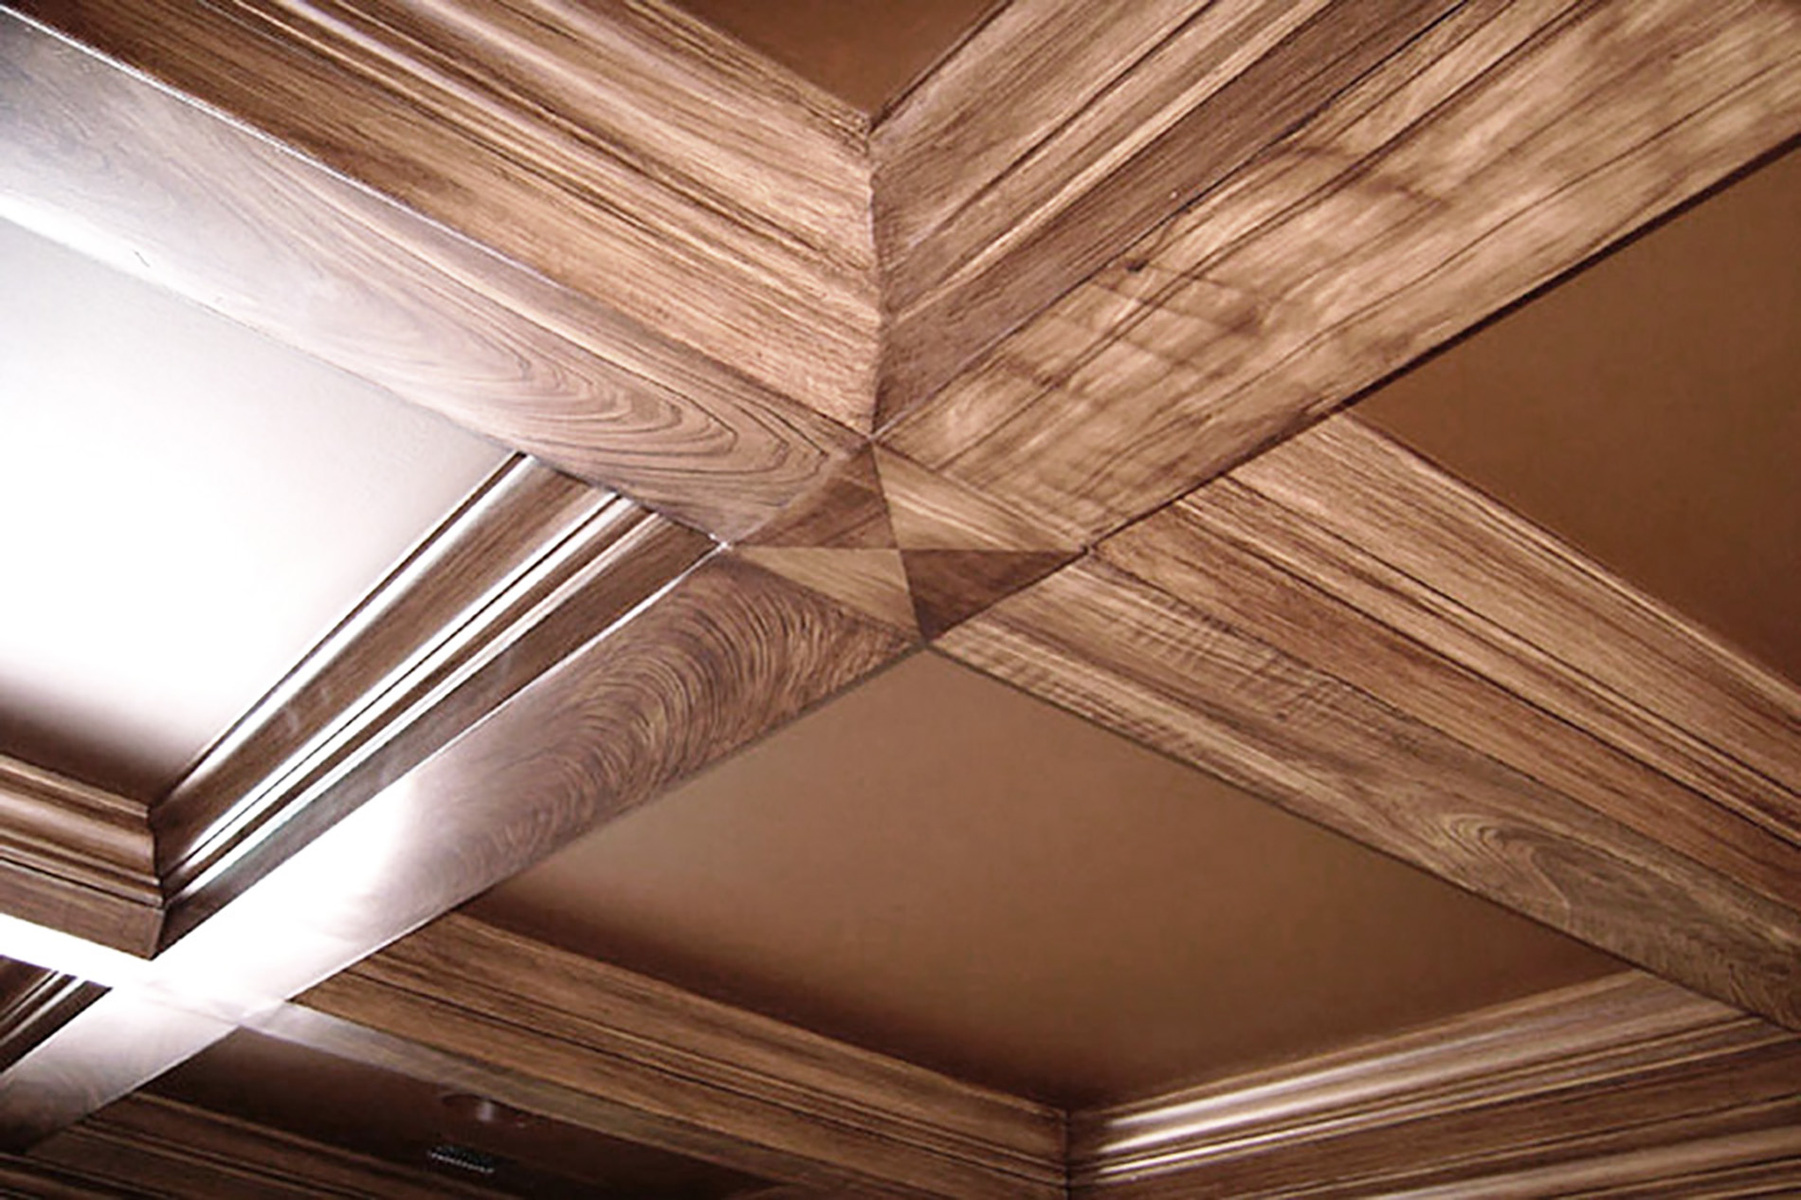 Wood Grained beams